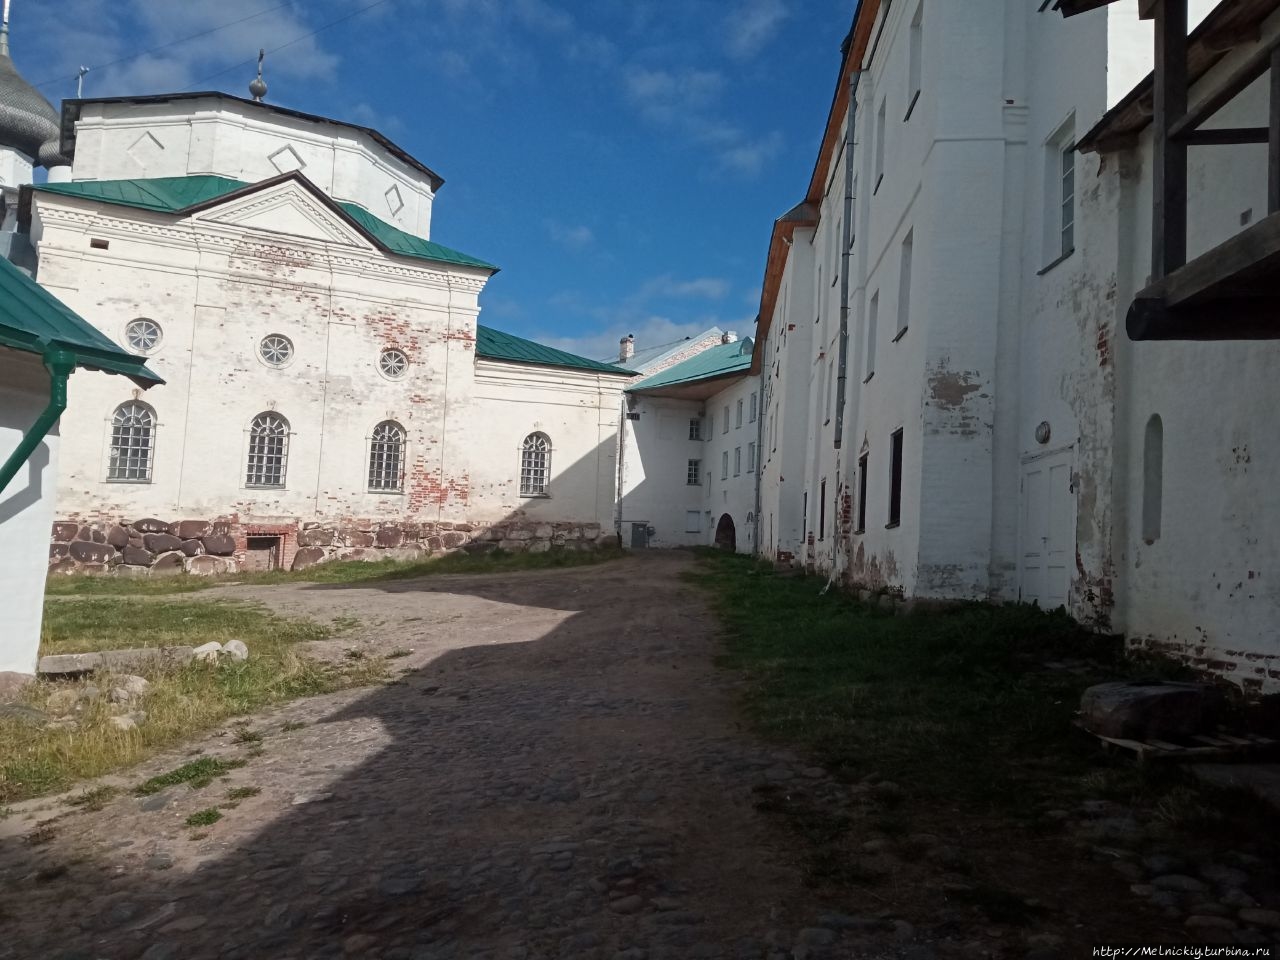 Небольшая прогулка по древнему монастырю Соловецкие острова, Россия